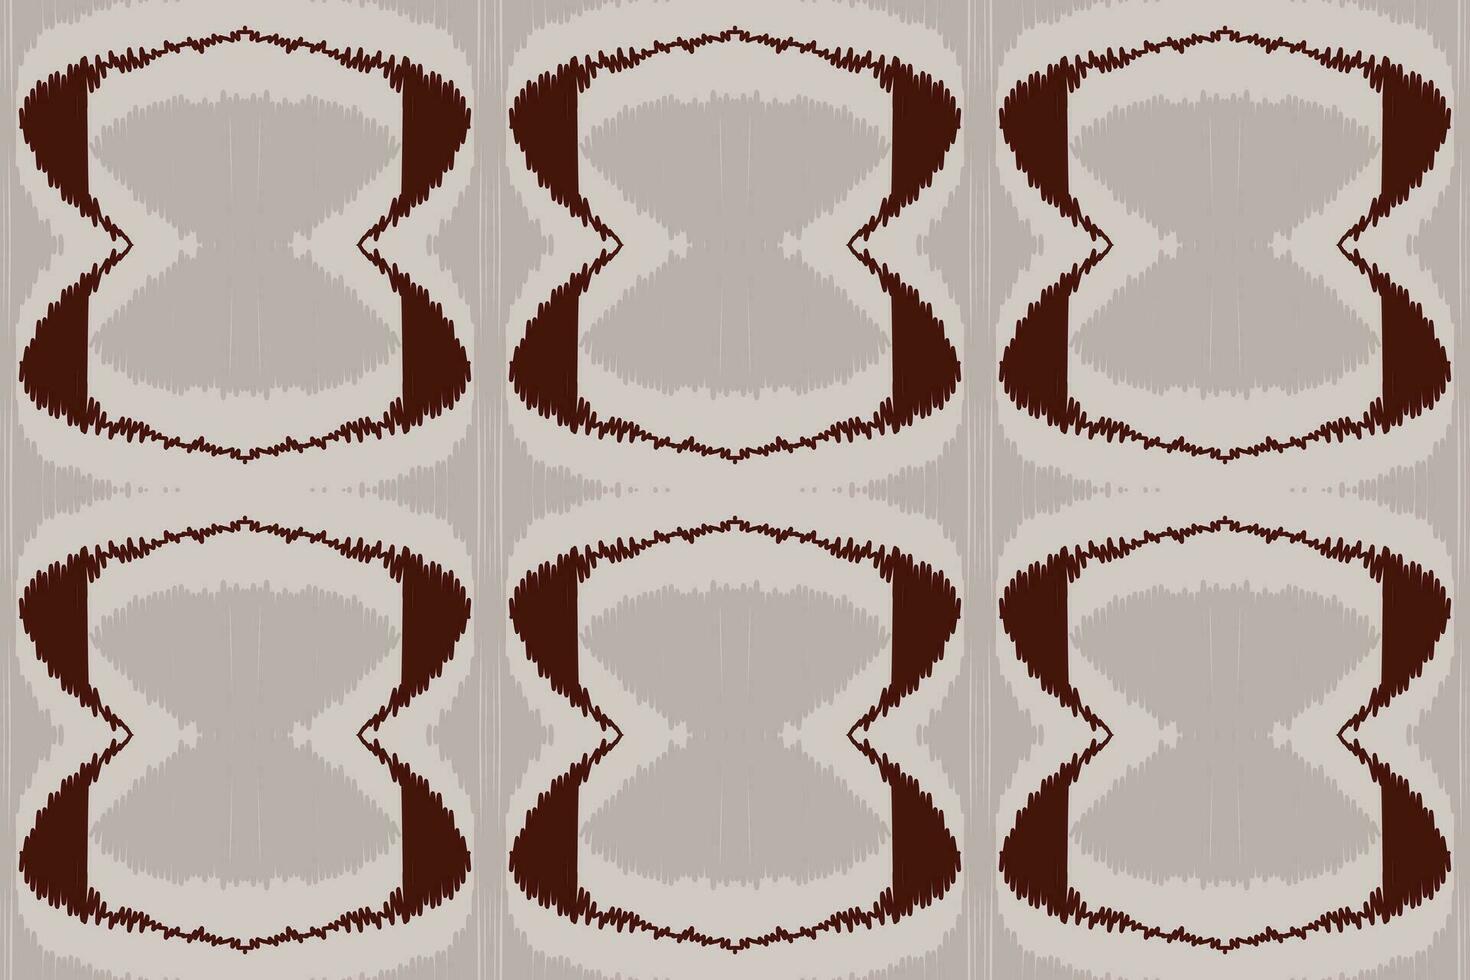 broderie cachemire florale ikat sur fond blanc. motif oriental ethnique géométrique style traditionnel. aztèque illustration vectorielle abstraite. conception pour la texture, le tissu, les vêtements, l'emballage, la décoration, le sarong. vecteur